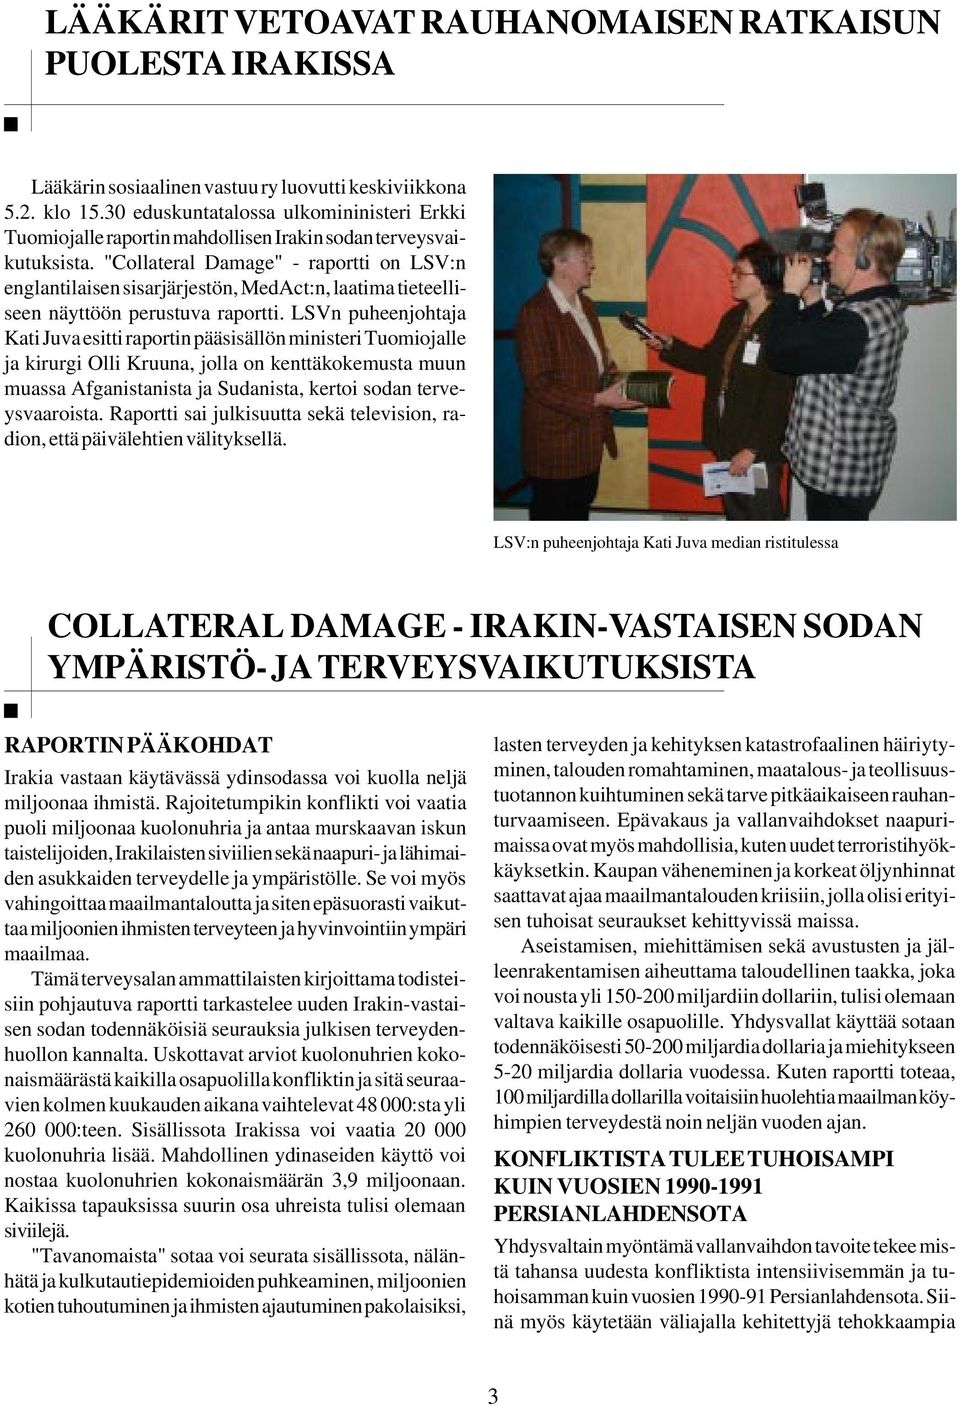 "Collateral Damage" - raportti on LSV:n englantilaisen sisarjärjestön, MedAct:n, laatima tieteelliseen näyttöön perustuva raportti.